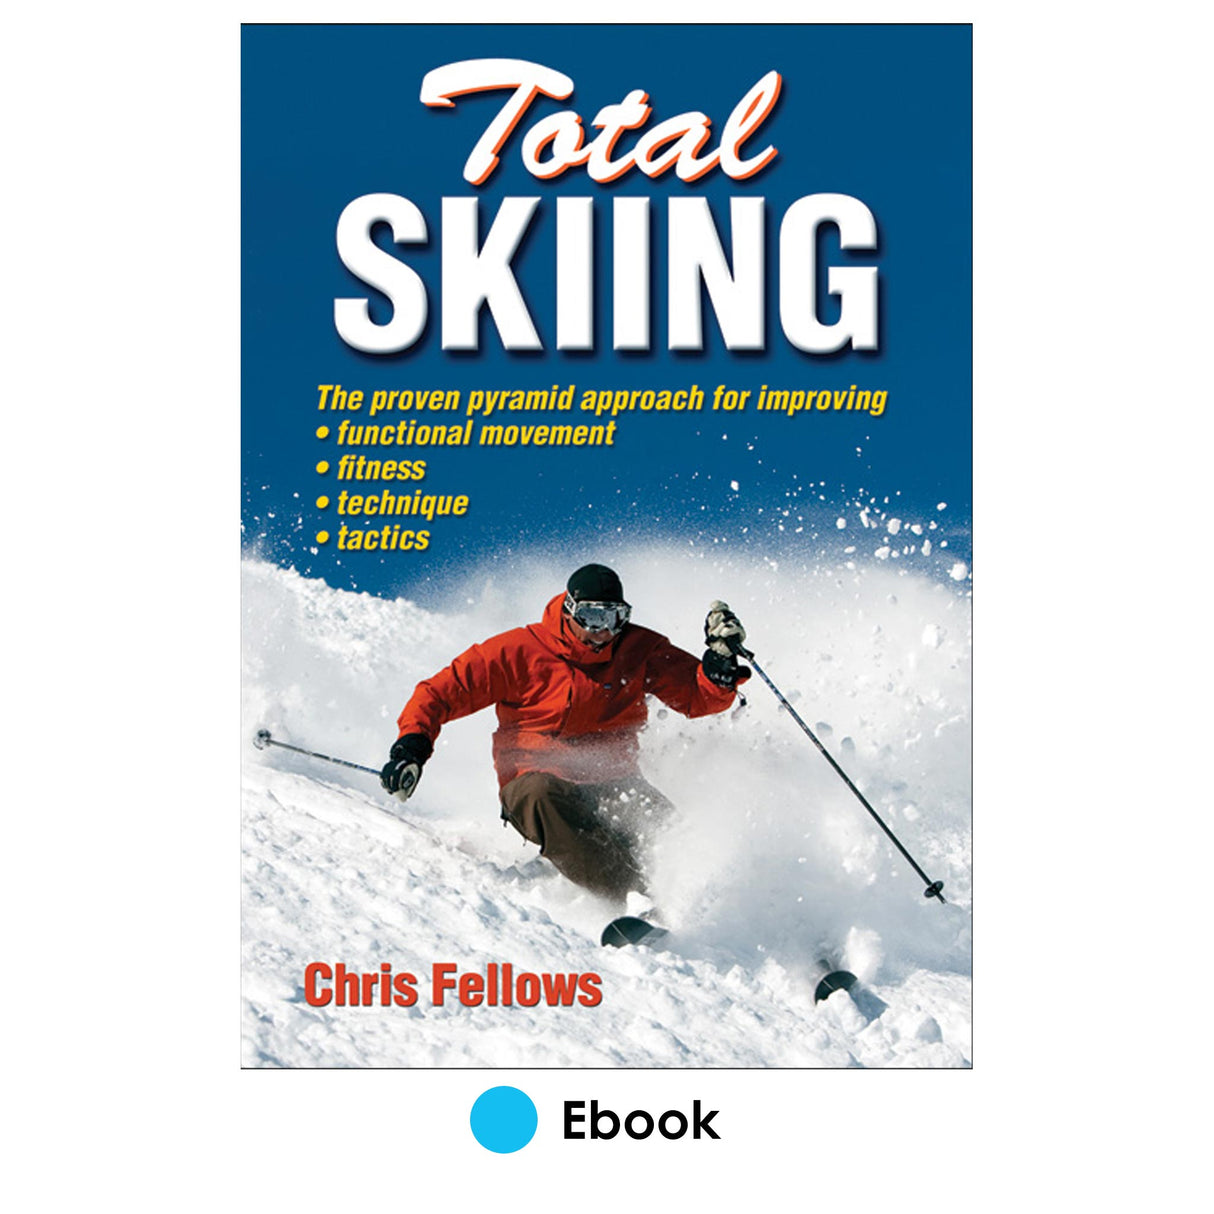 Total Skiing PDF